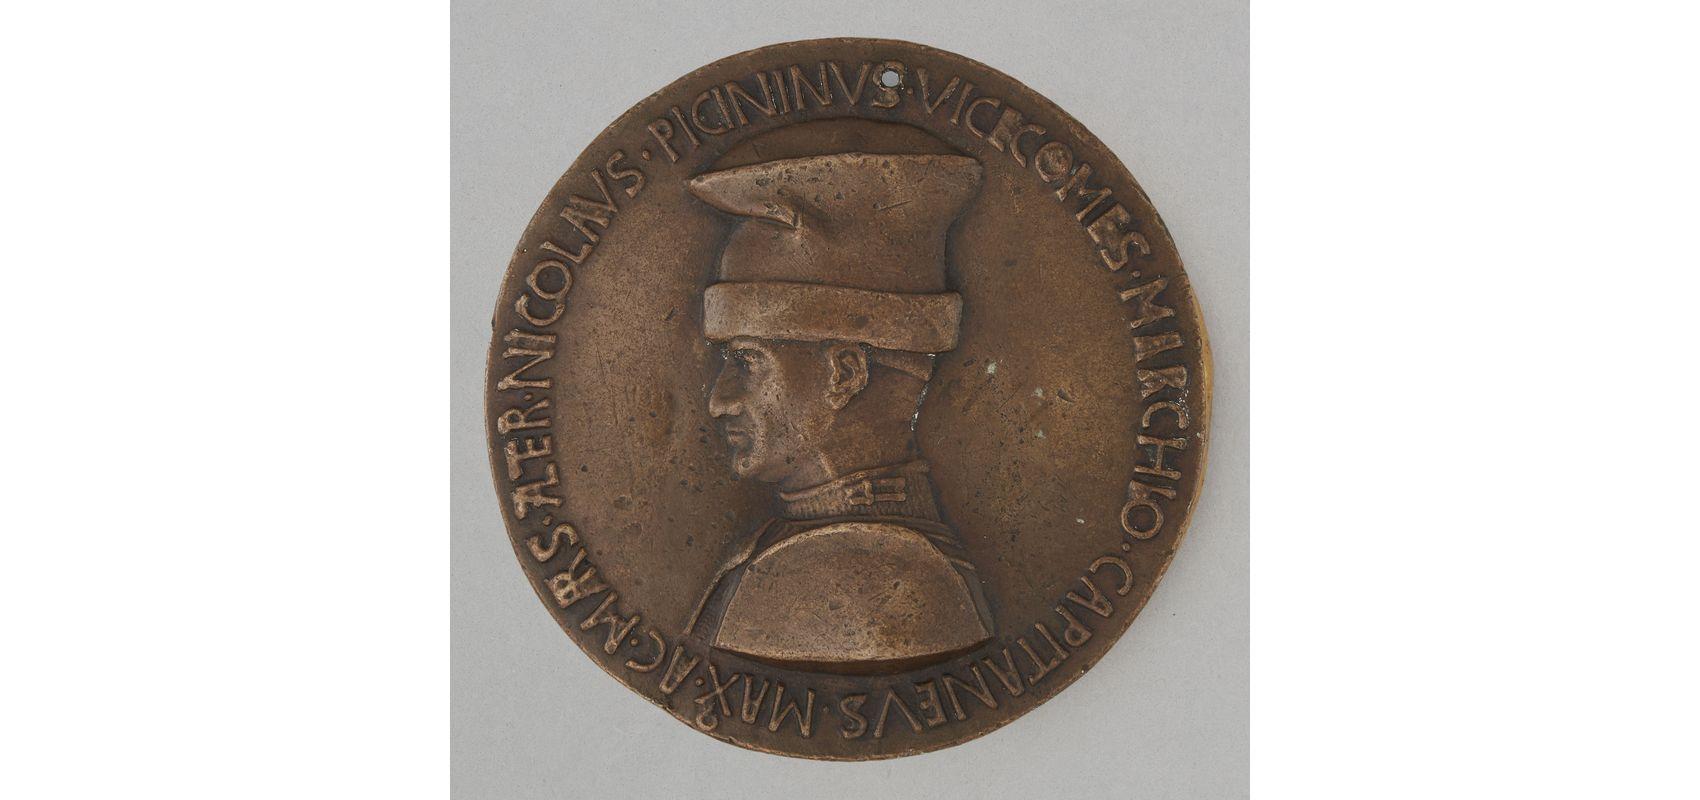 Médaille : le condottiere Niccolò Piccinino - 1441 - BnF, département des Monnaies, médailles et antiques